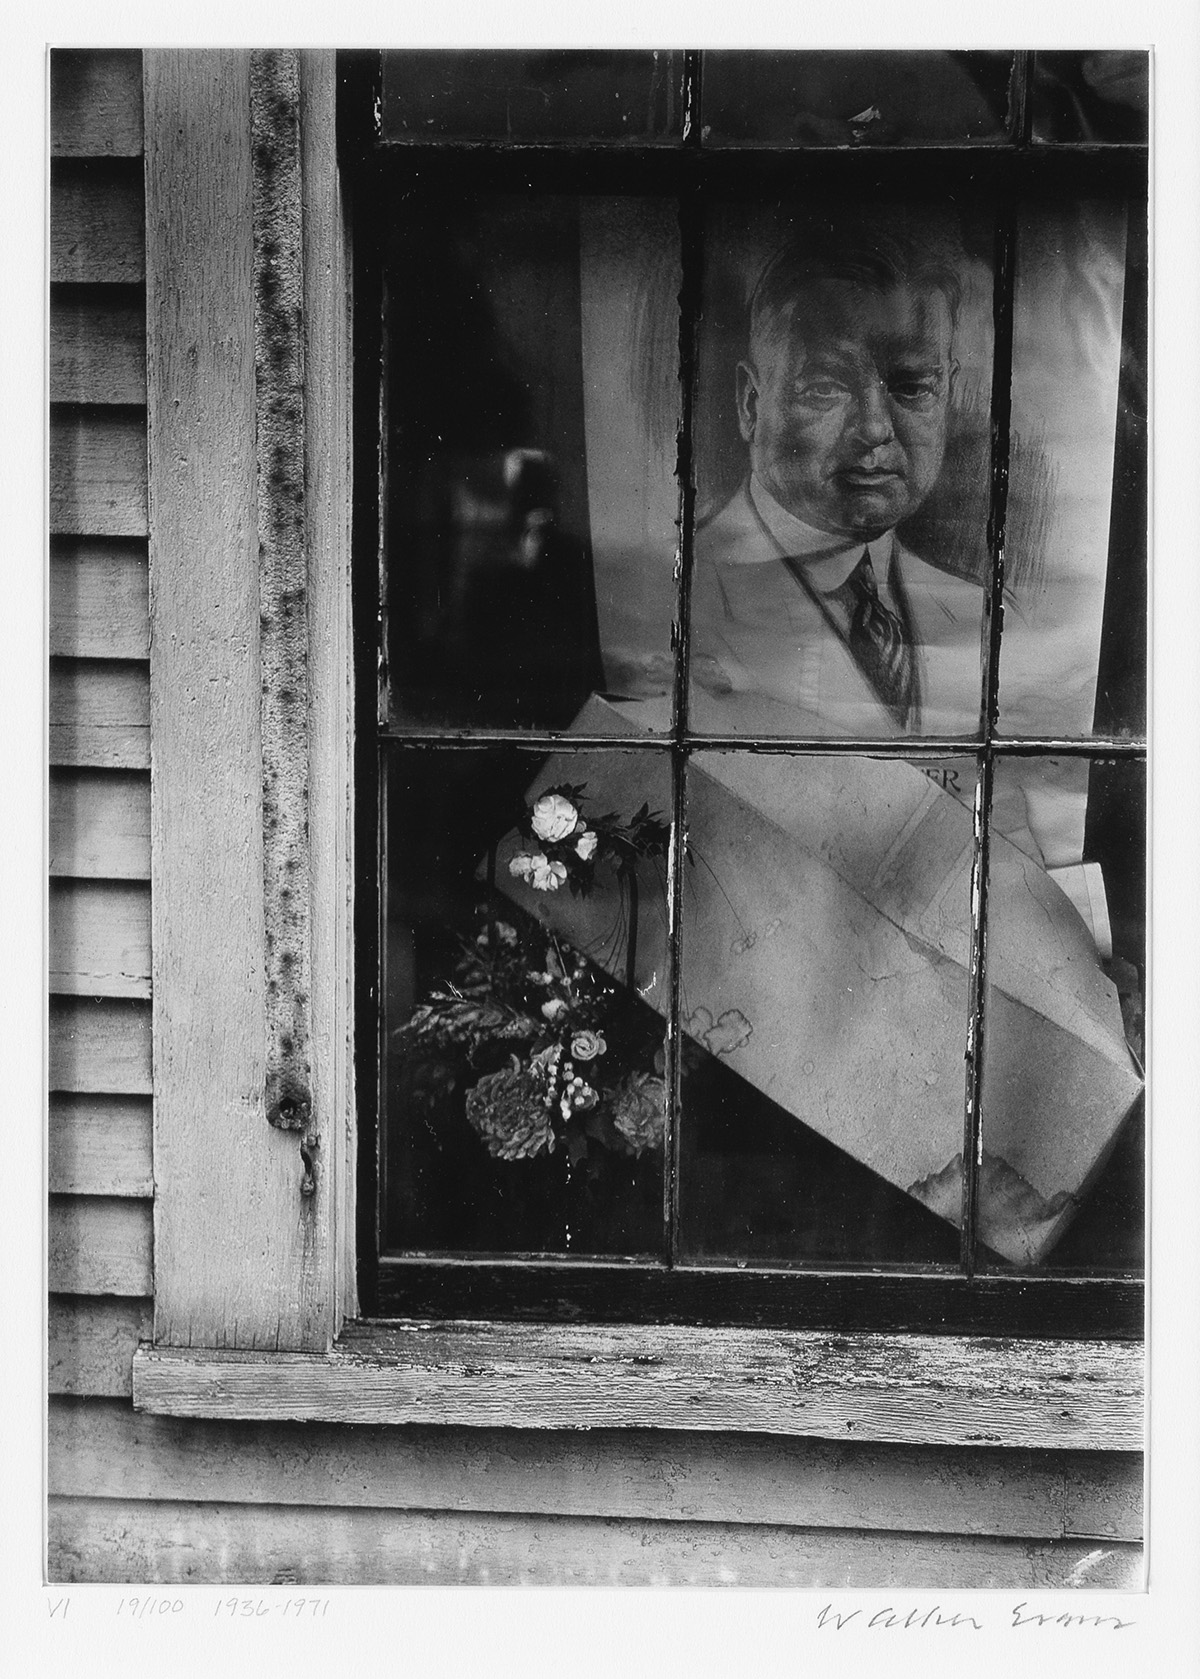 WALKER EVANS (1903-1975) Flowers and Poster of Herbert Hoover in House Window, Wellfleet, Massachusetts.